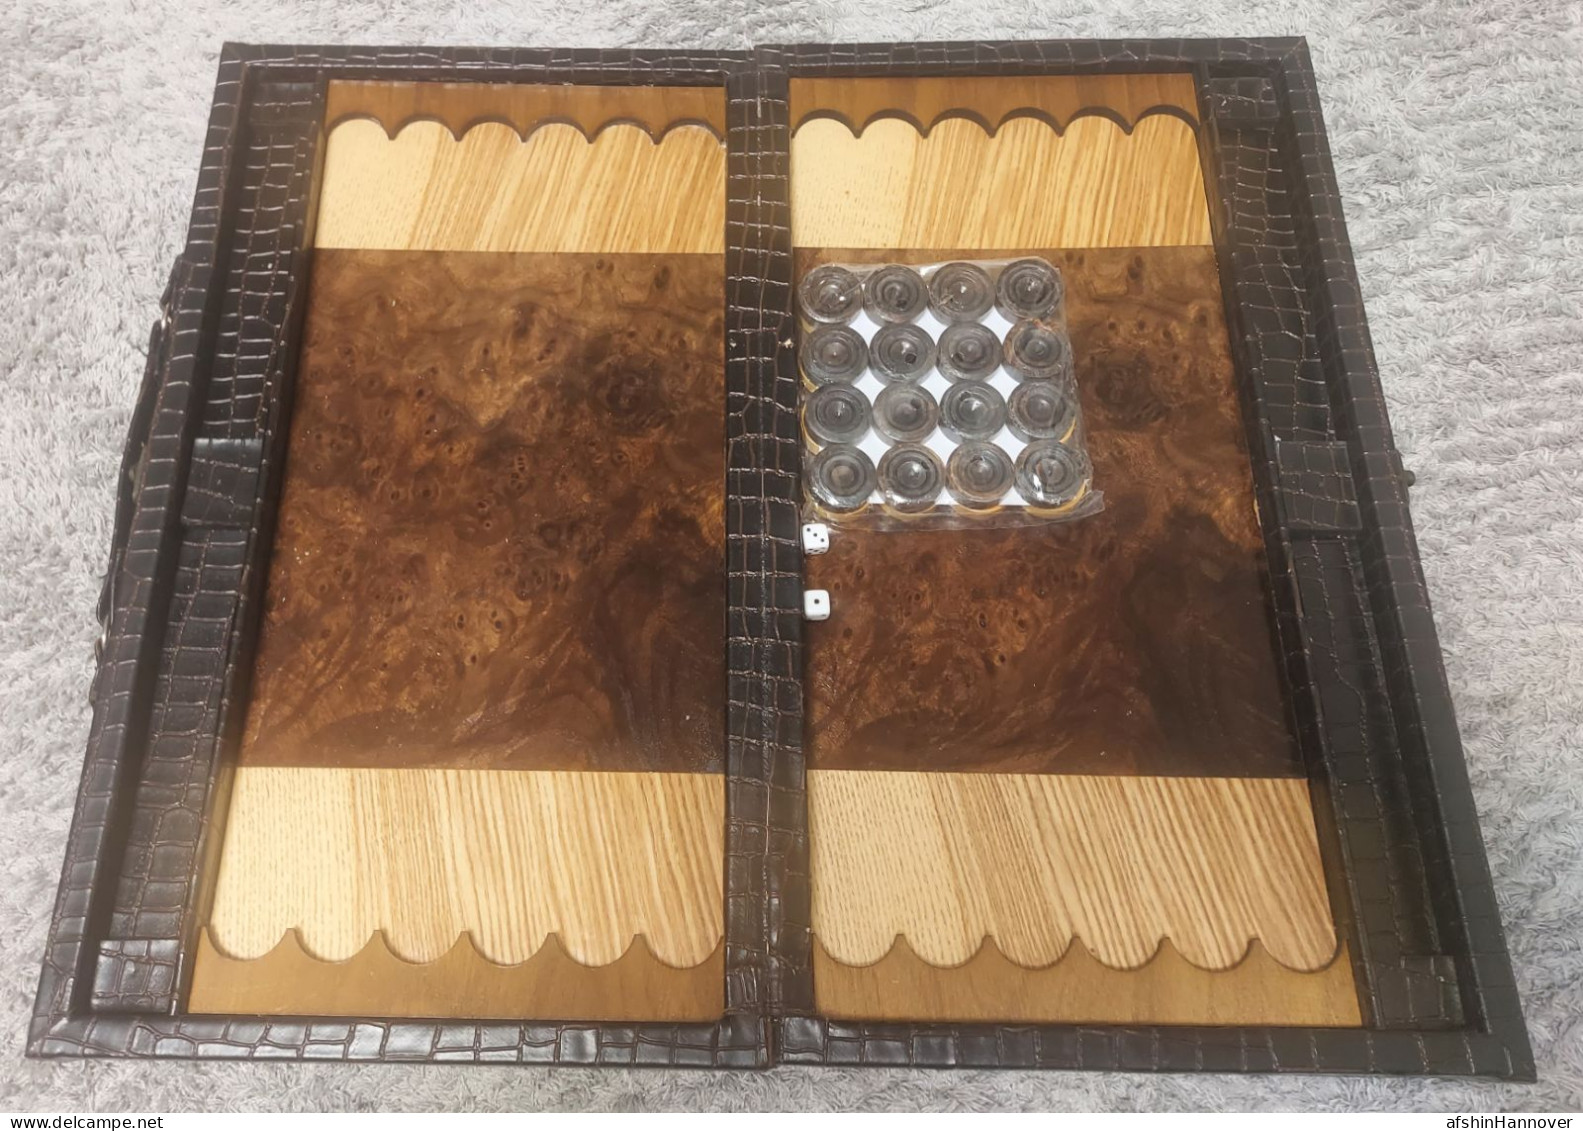 Iran Persian تخته نرد  با جلد چرم مصنوعی  ساخت ایران  backgammon board with artificial leather cover made in Iran